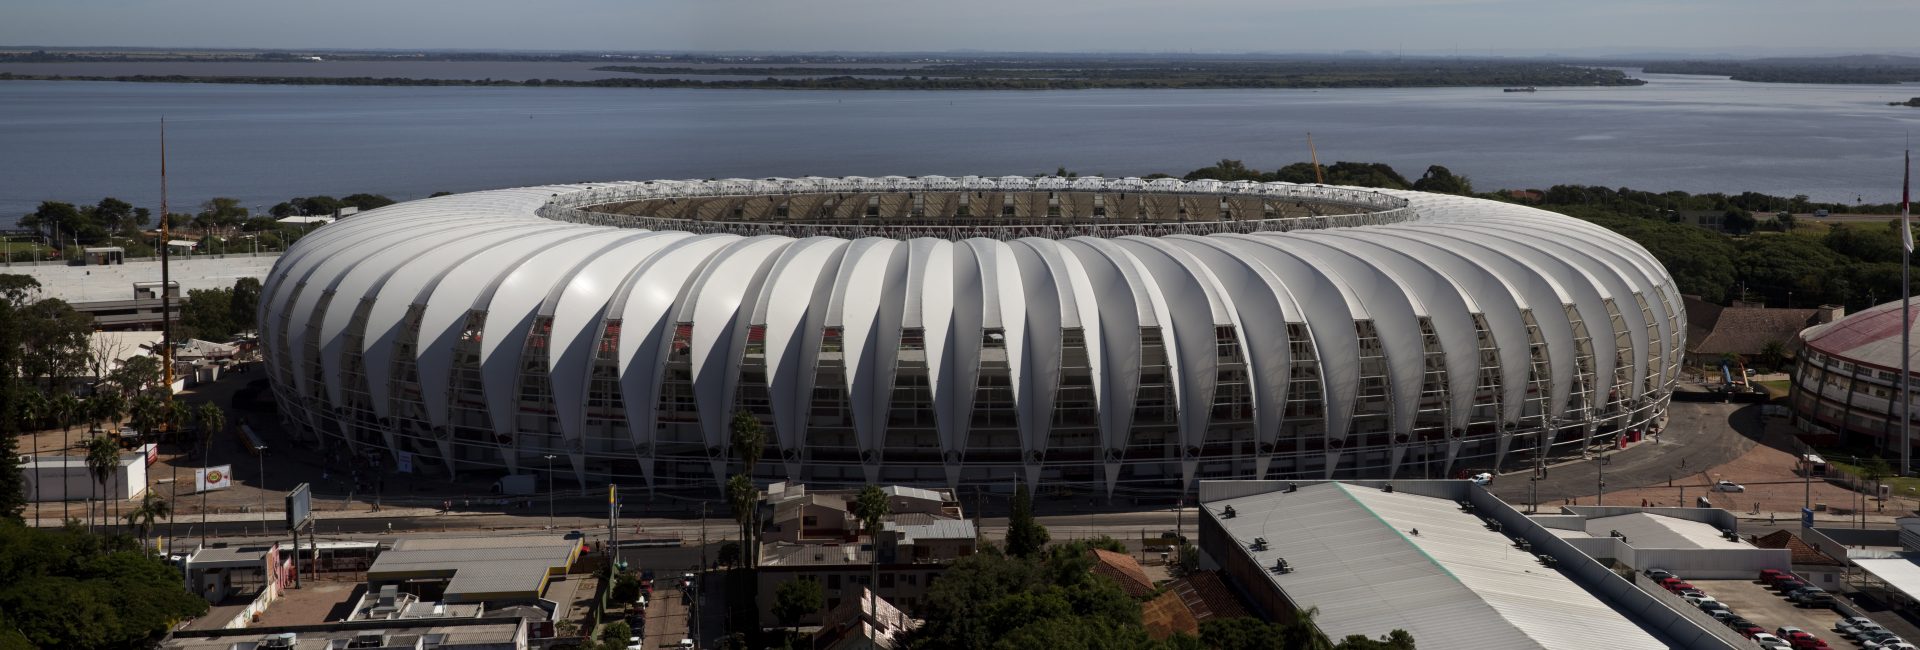 Arena Beira-Rio